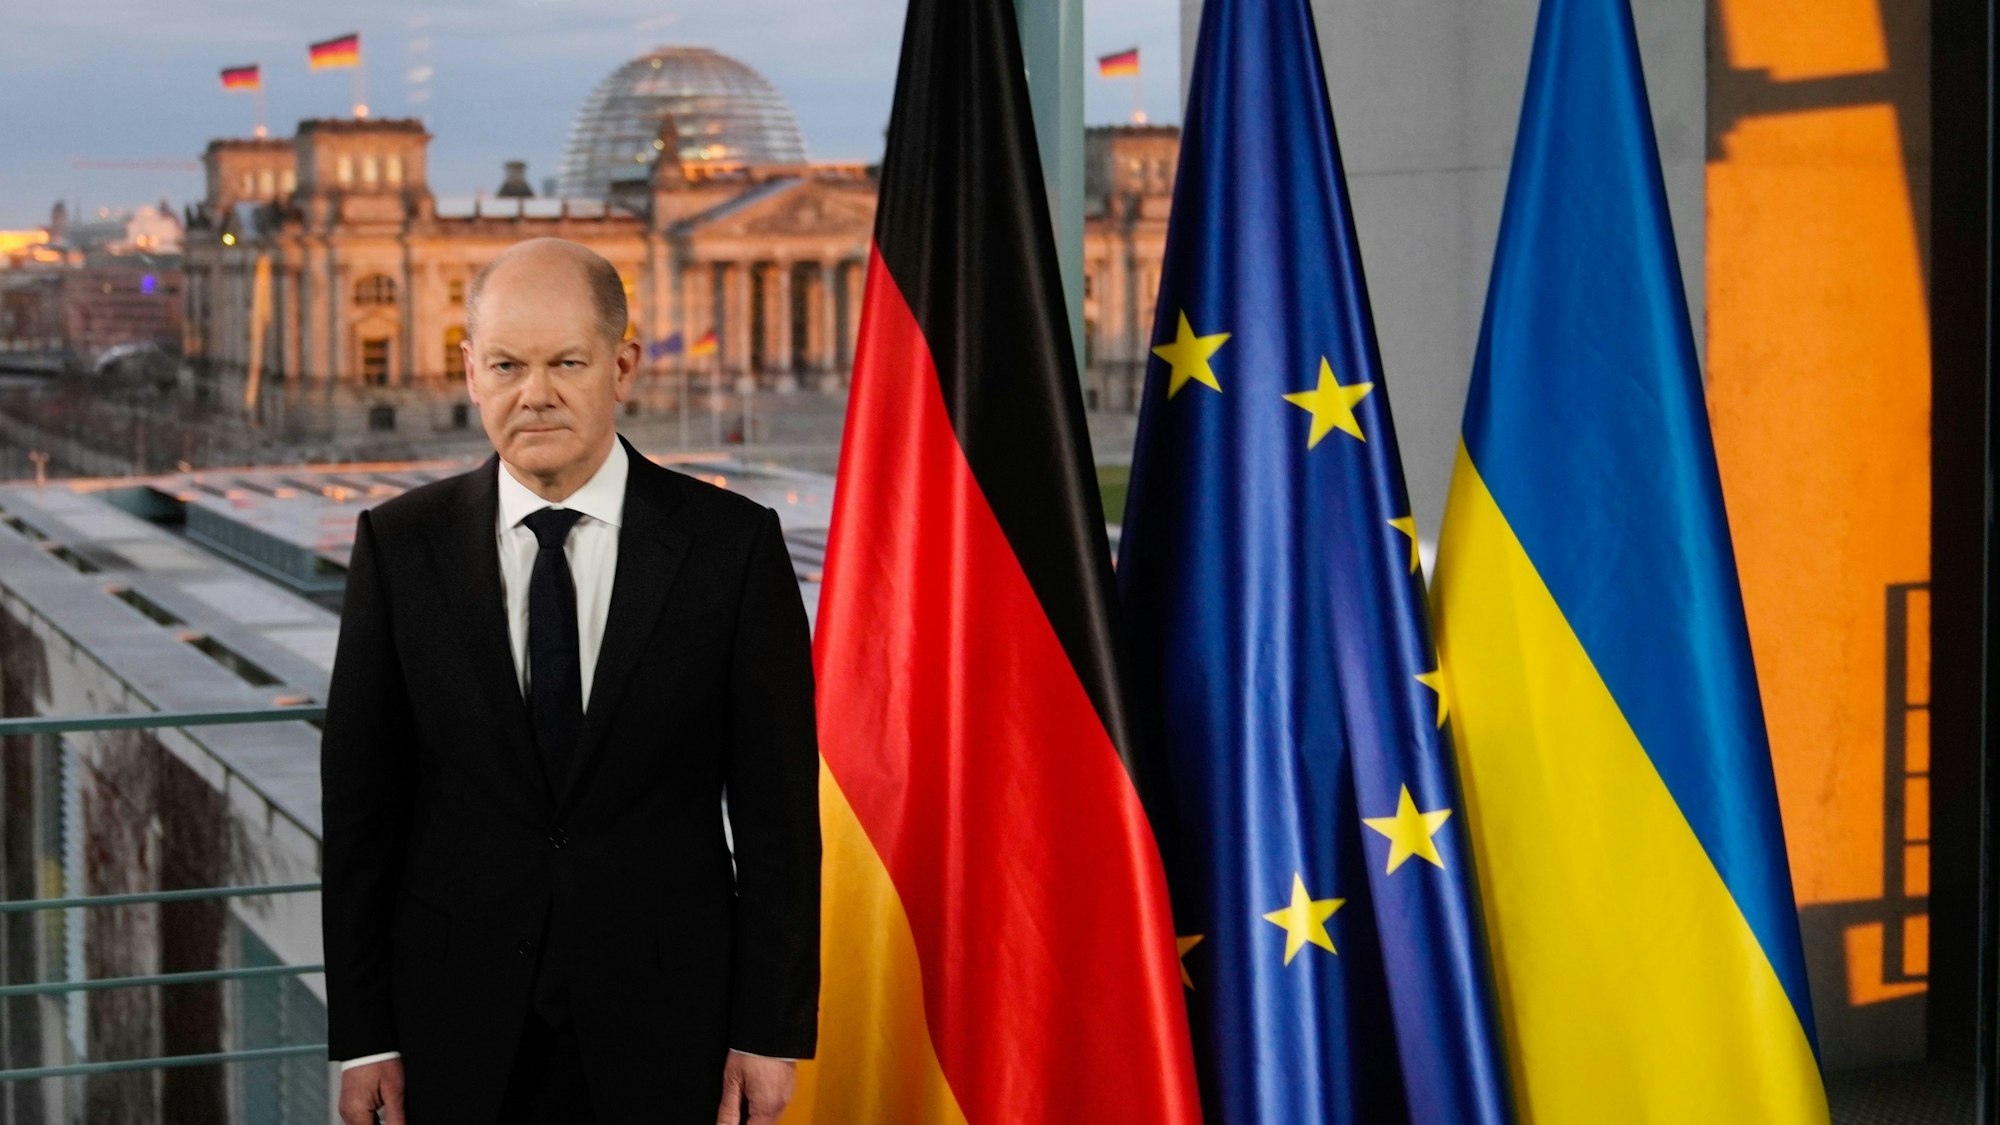 Olaf Scholz steht in einem schwarzen Anzug neben einer Deutschland-, Europa- und Ukraine-Flagge.